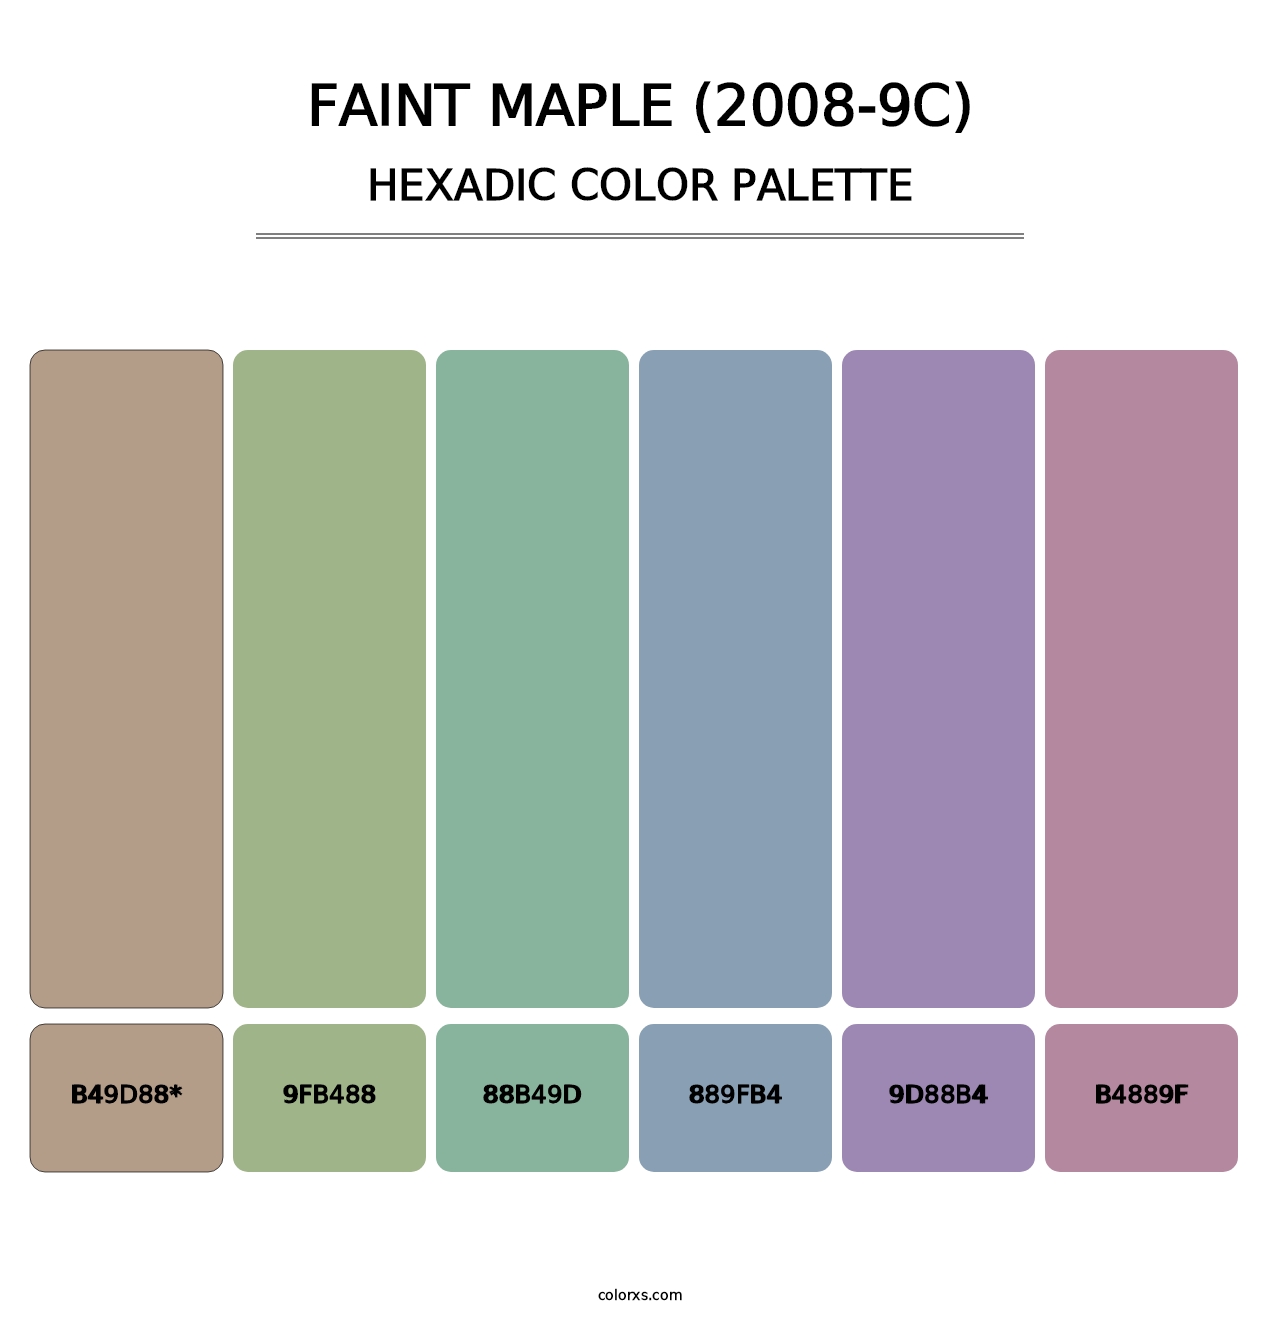 Faint Maple (2008-9C) - Hexadic Color Palette